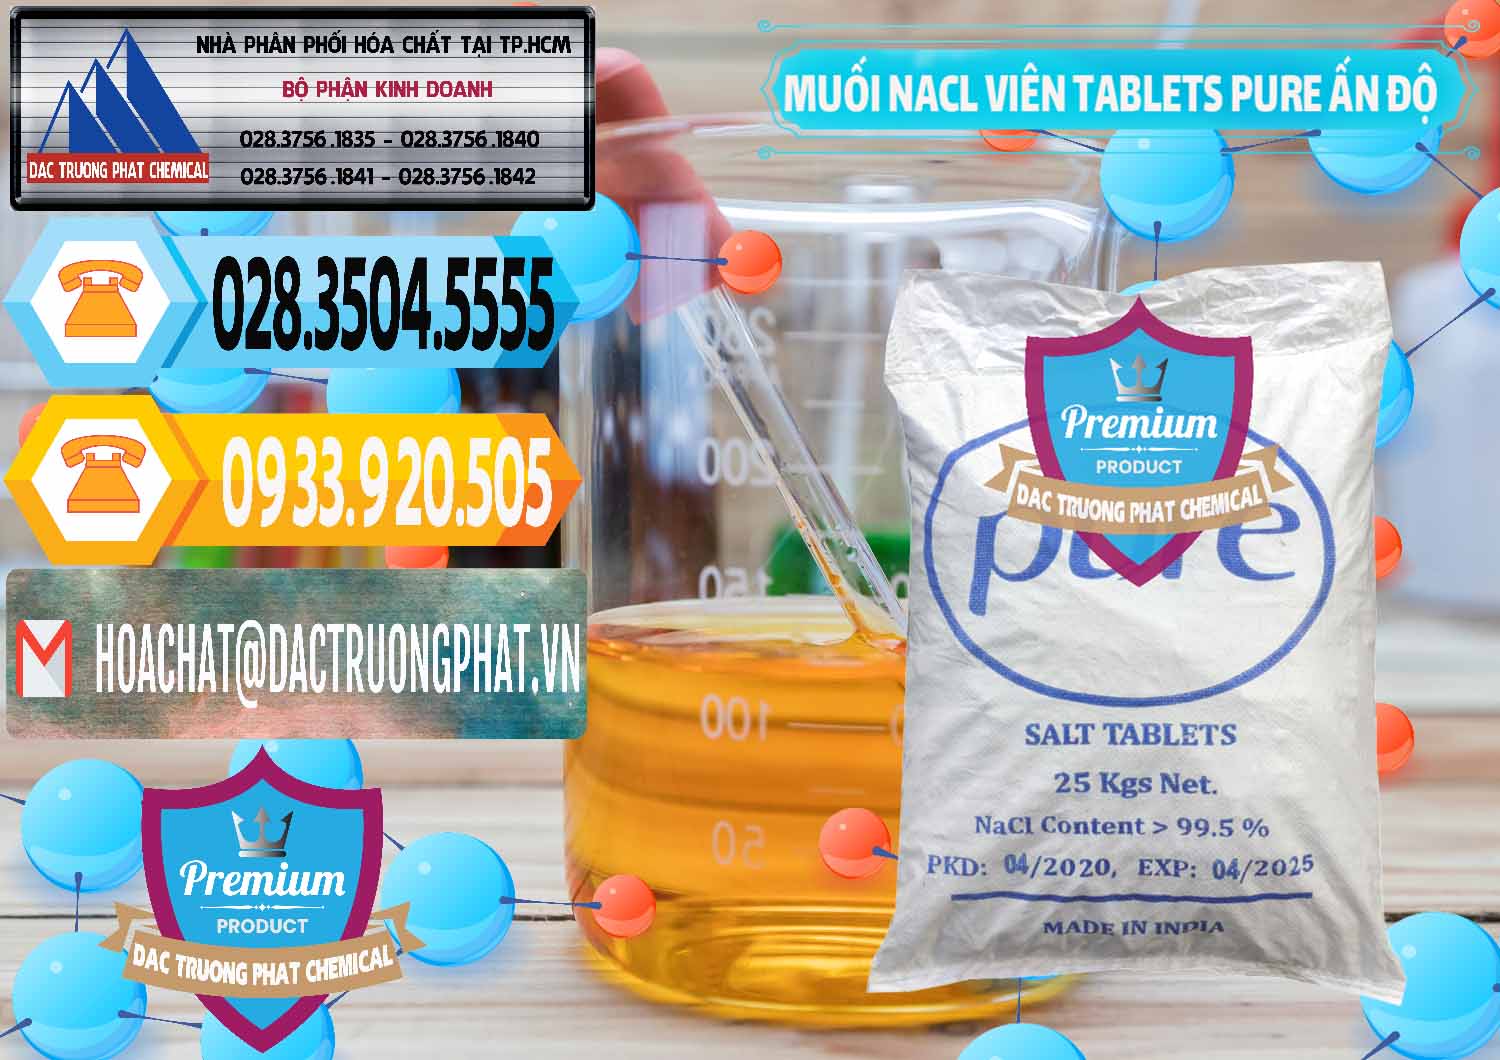 Cty chuyên cung ứng _ bán Muối NaCL – Sodium Chloride Dạng Viên Tablets Pure Ấn Độ India - 0294 - Phân phối và cung ứng hóa chất tại TP.HCM - hoachattayrua.net